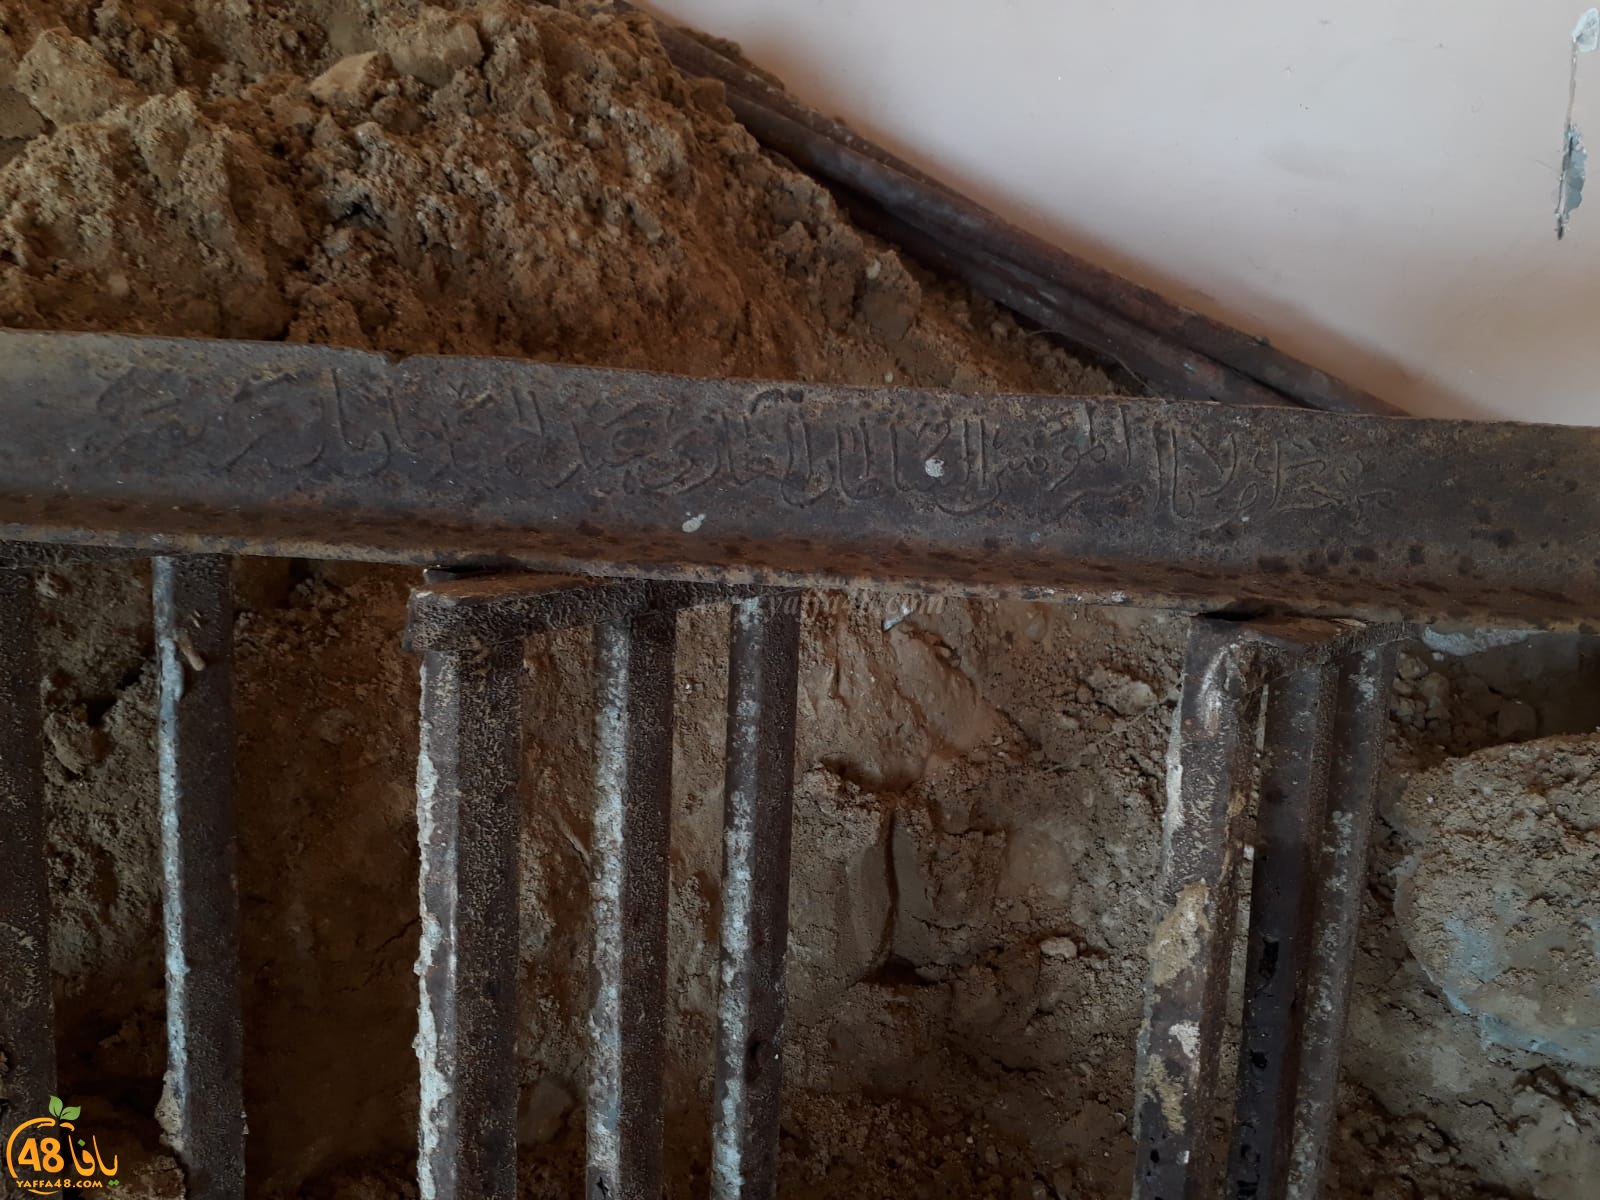  العثور على أدوات حديدية أثرية تعود للعهد العثماني في البلدة القديمة بيافا